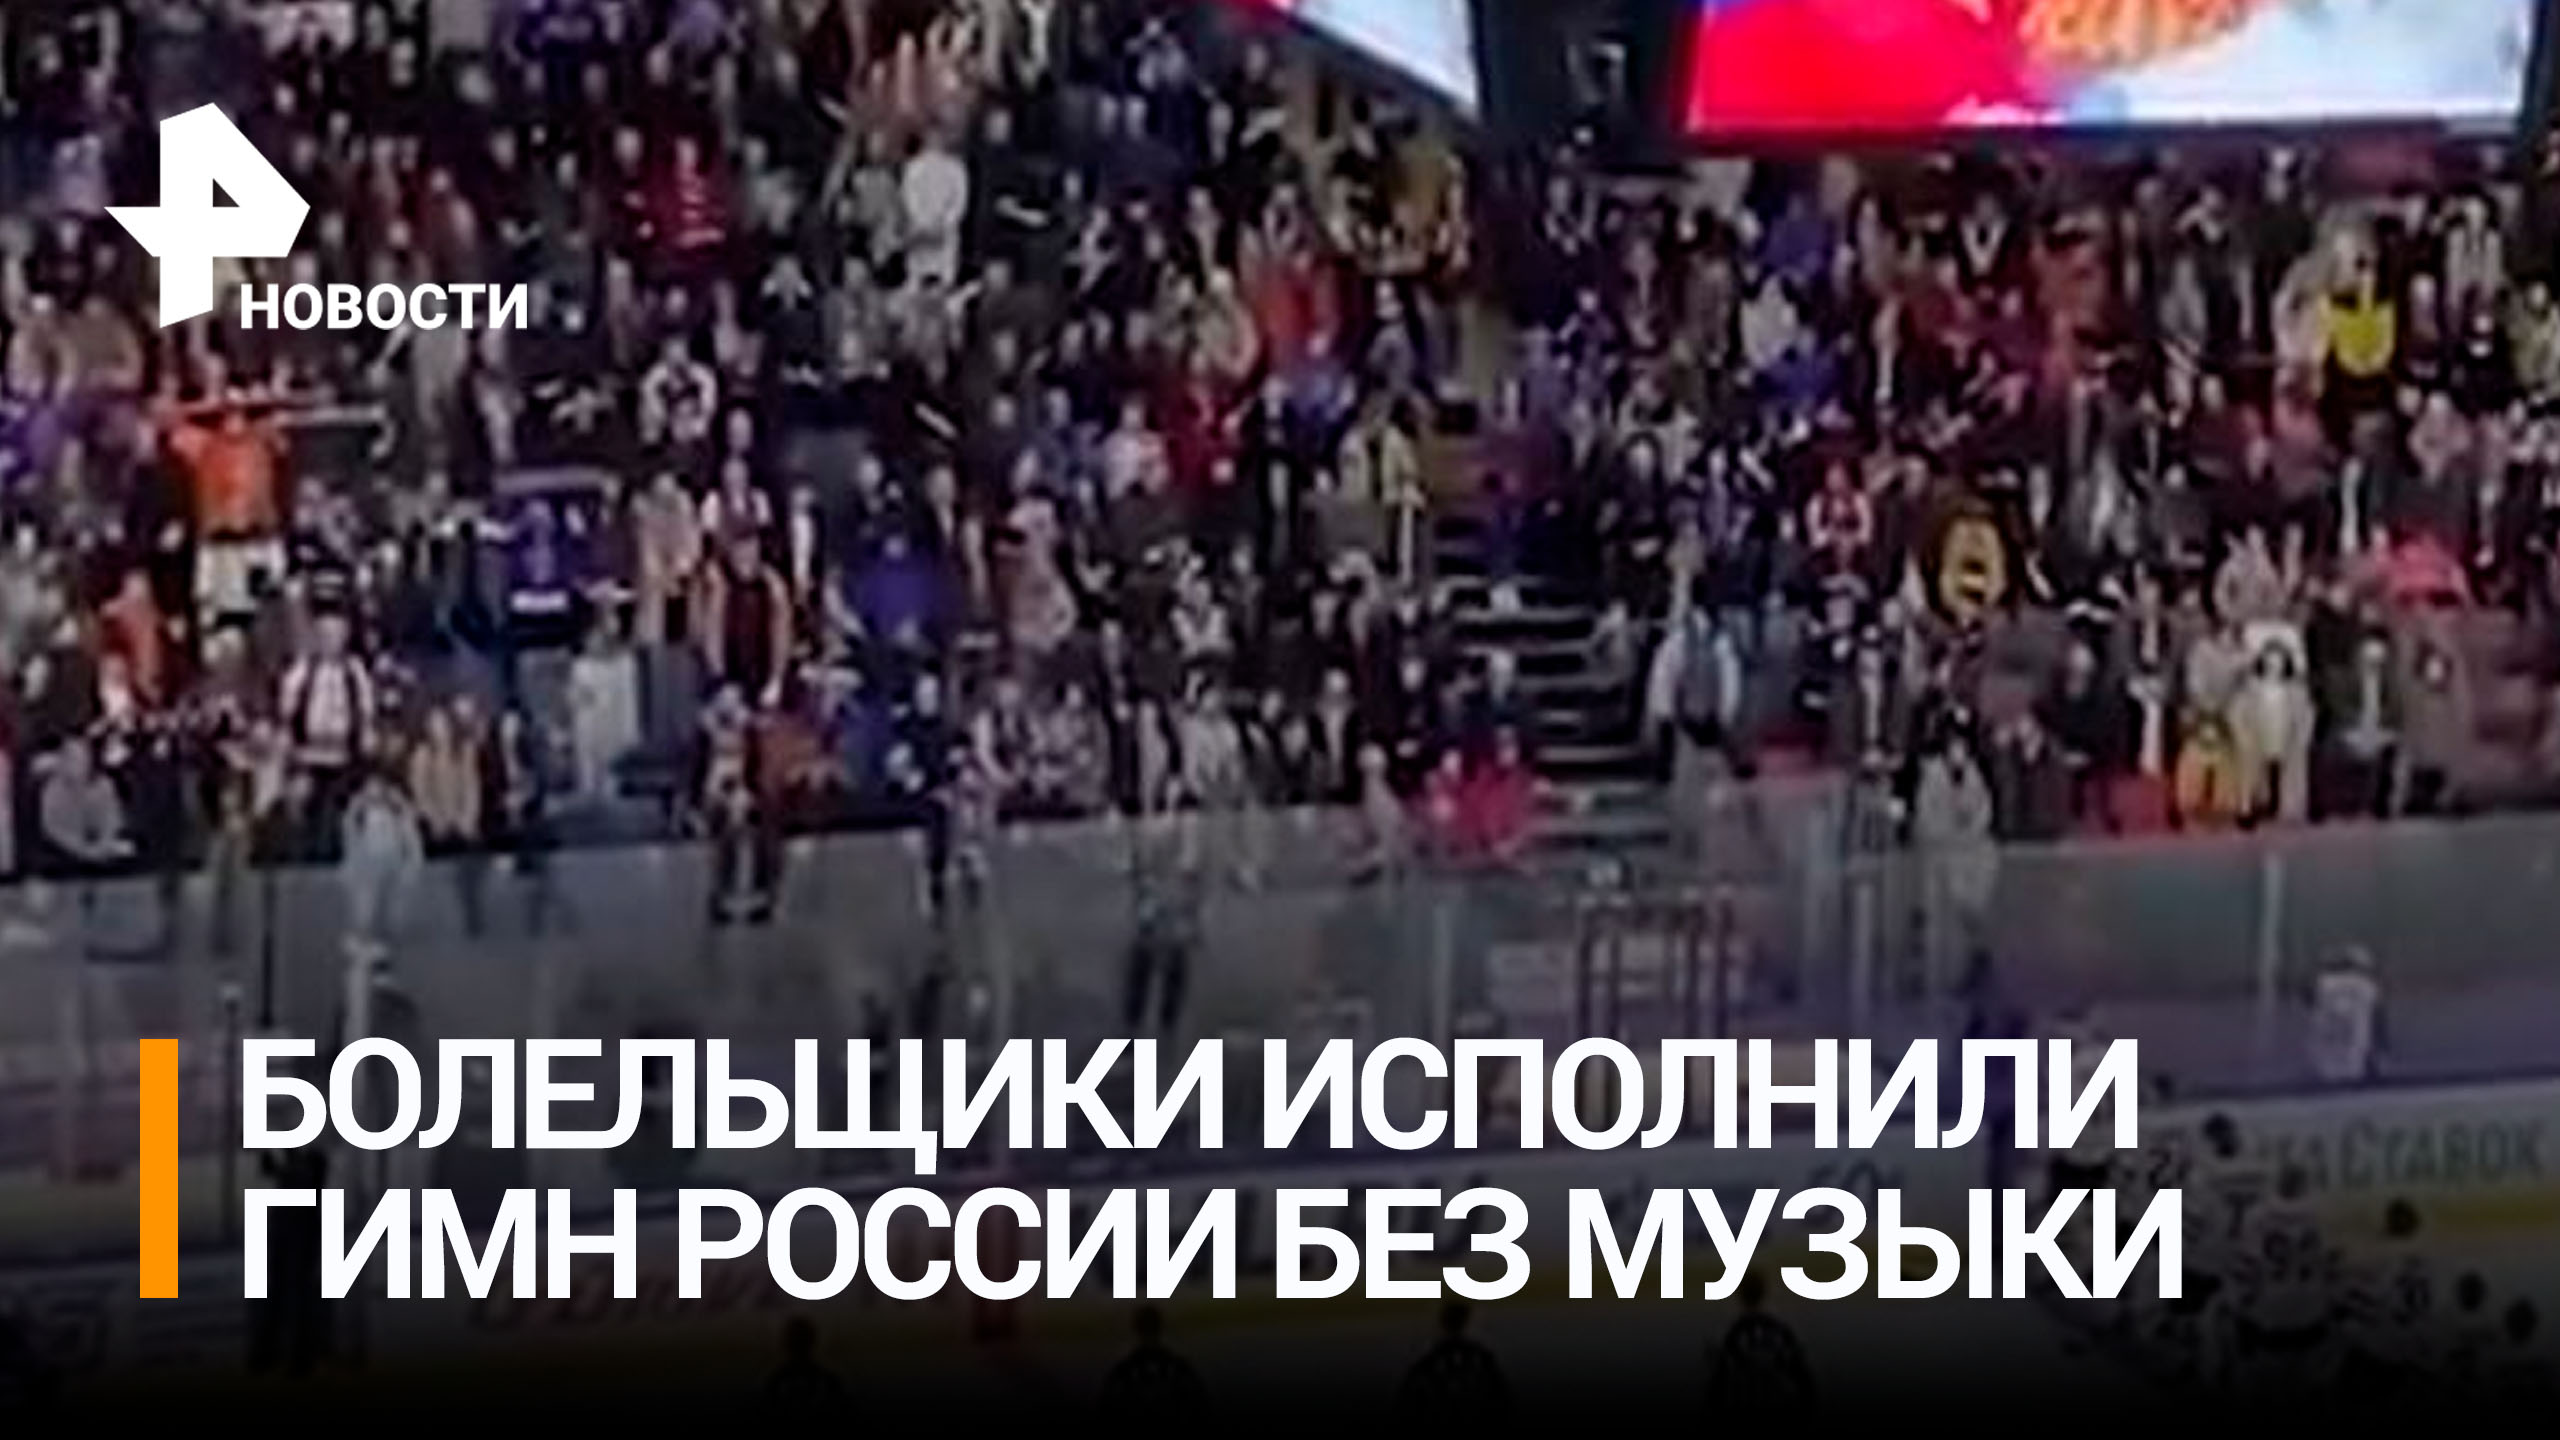 Мощное видео: зрители хоккейного матча спели гимн России даже без музыки / РЕН Новости